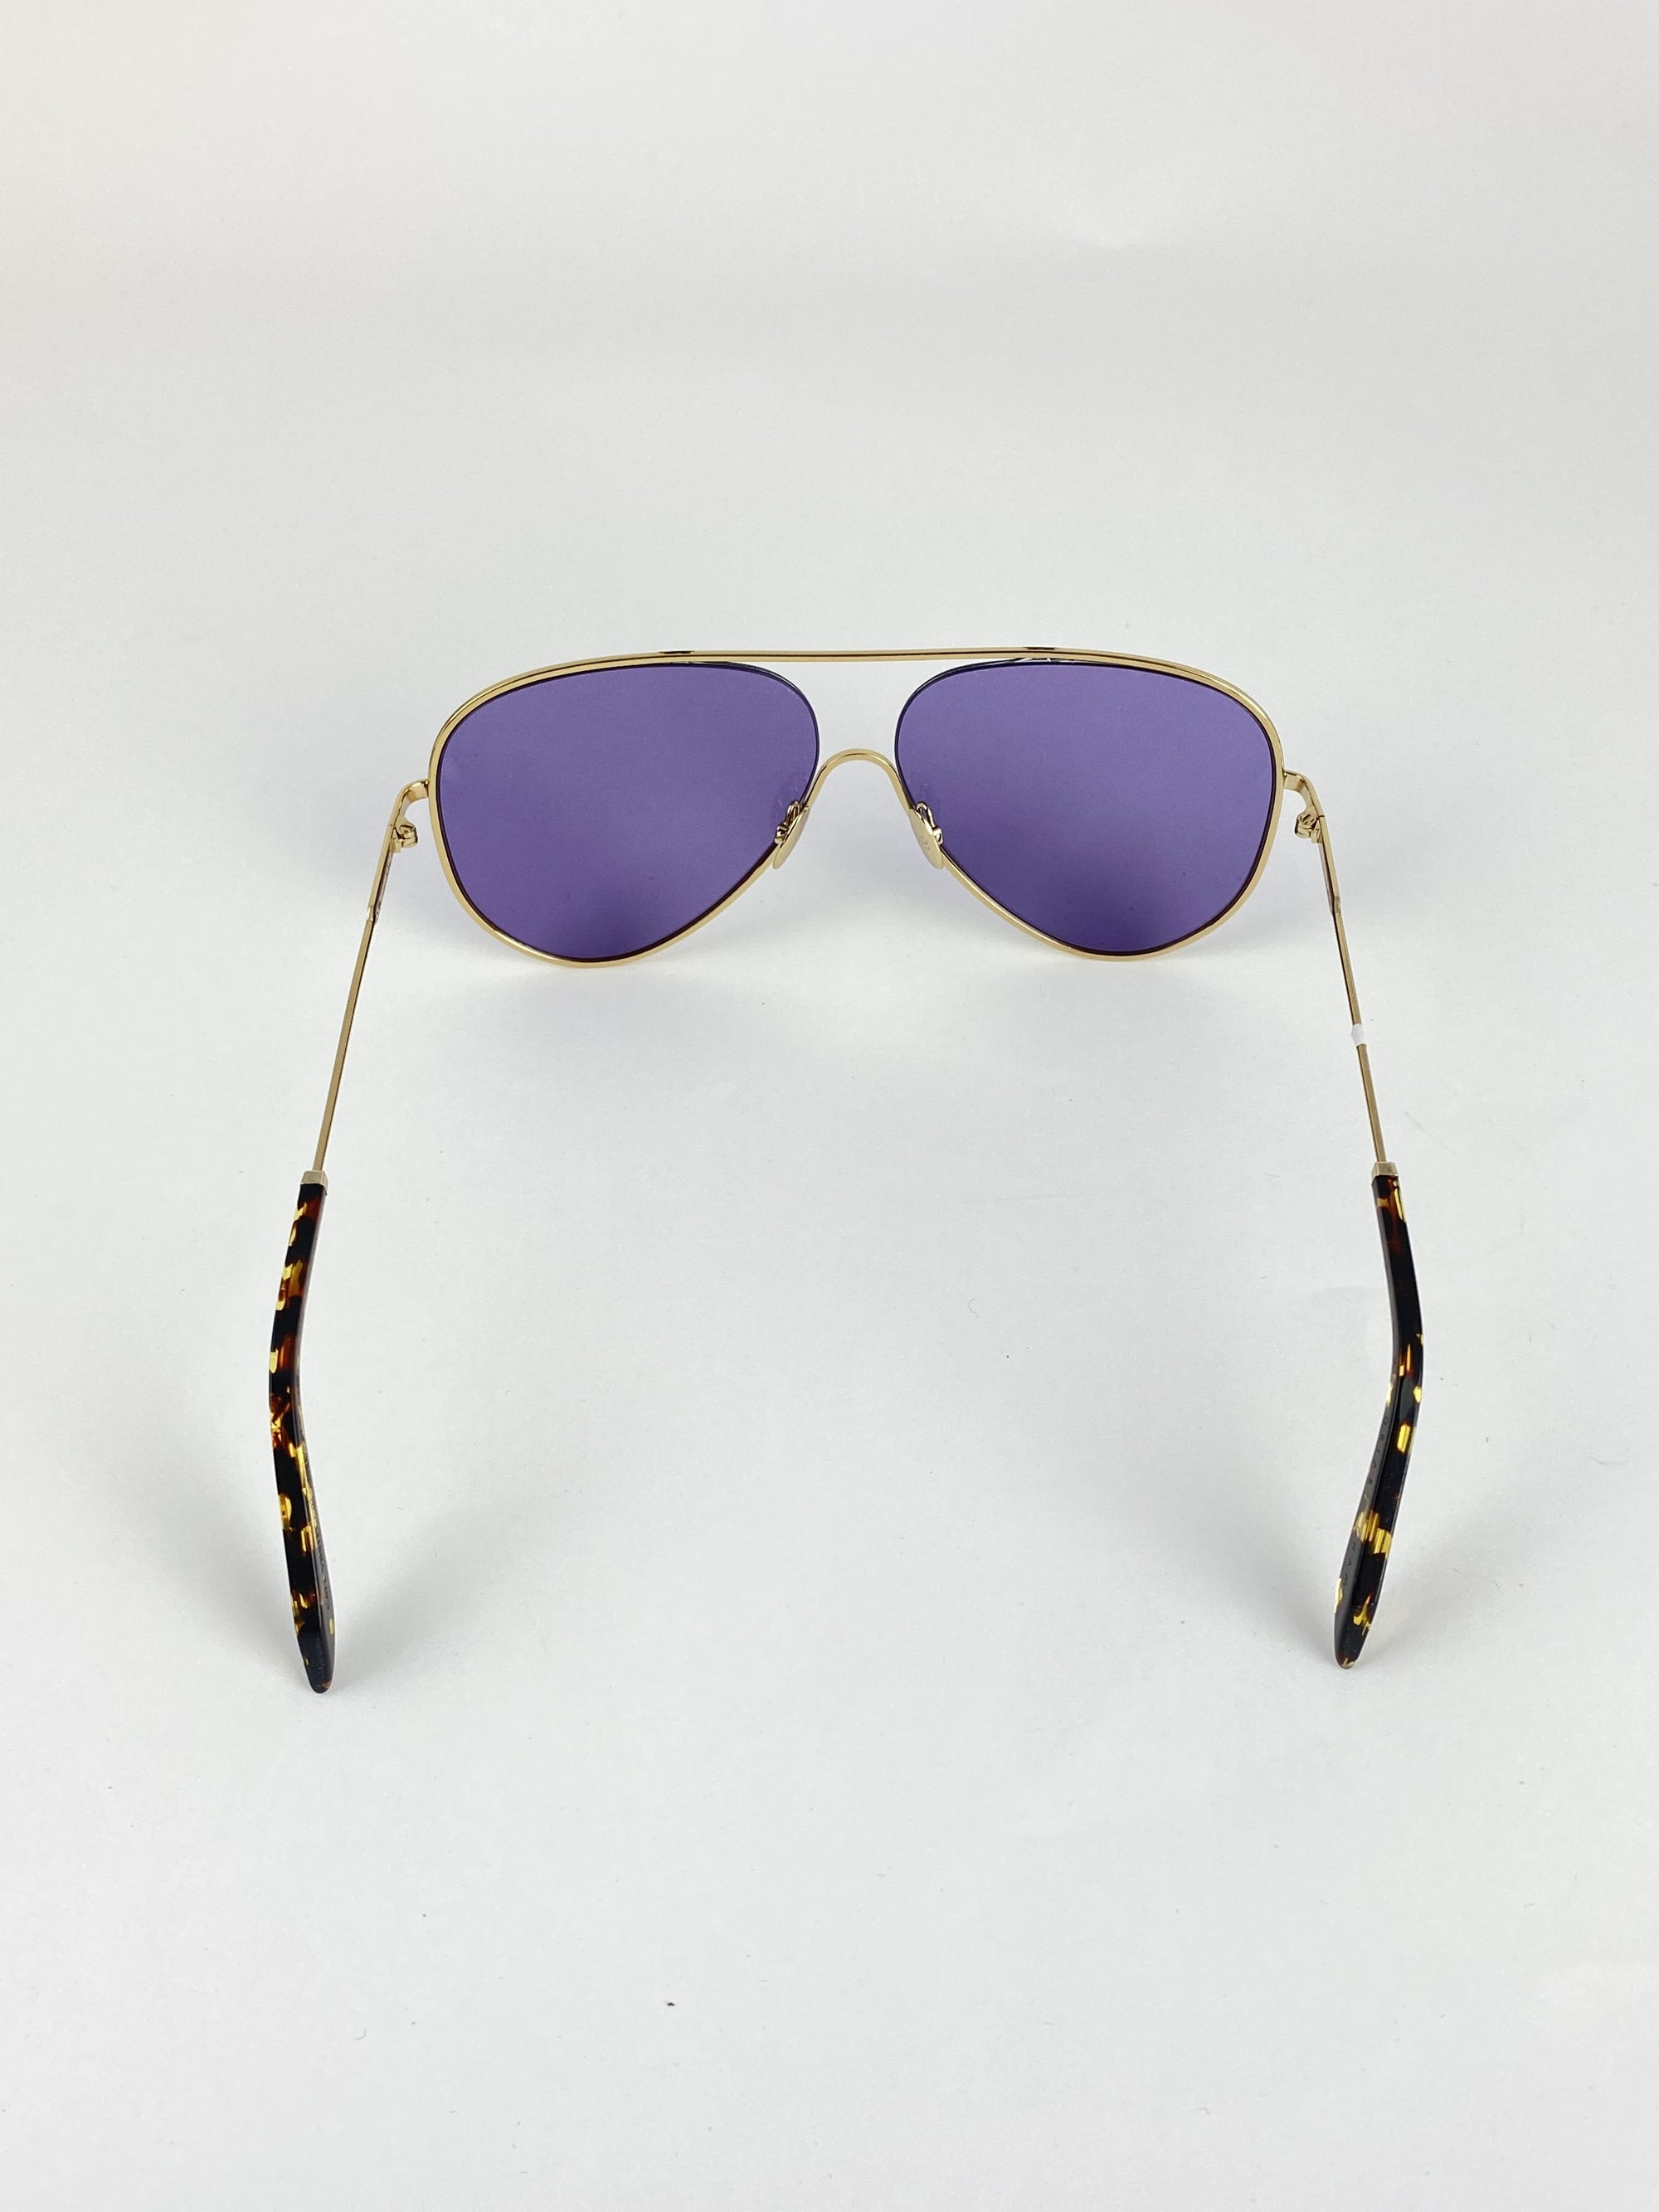 Produktbild der Victoria Beckham Pilot Sunglasses purple vor weißem Hintergrund.